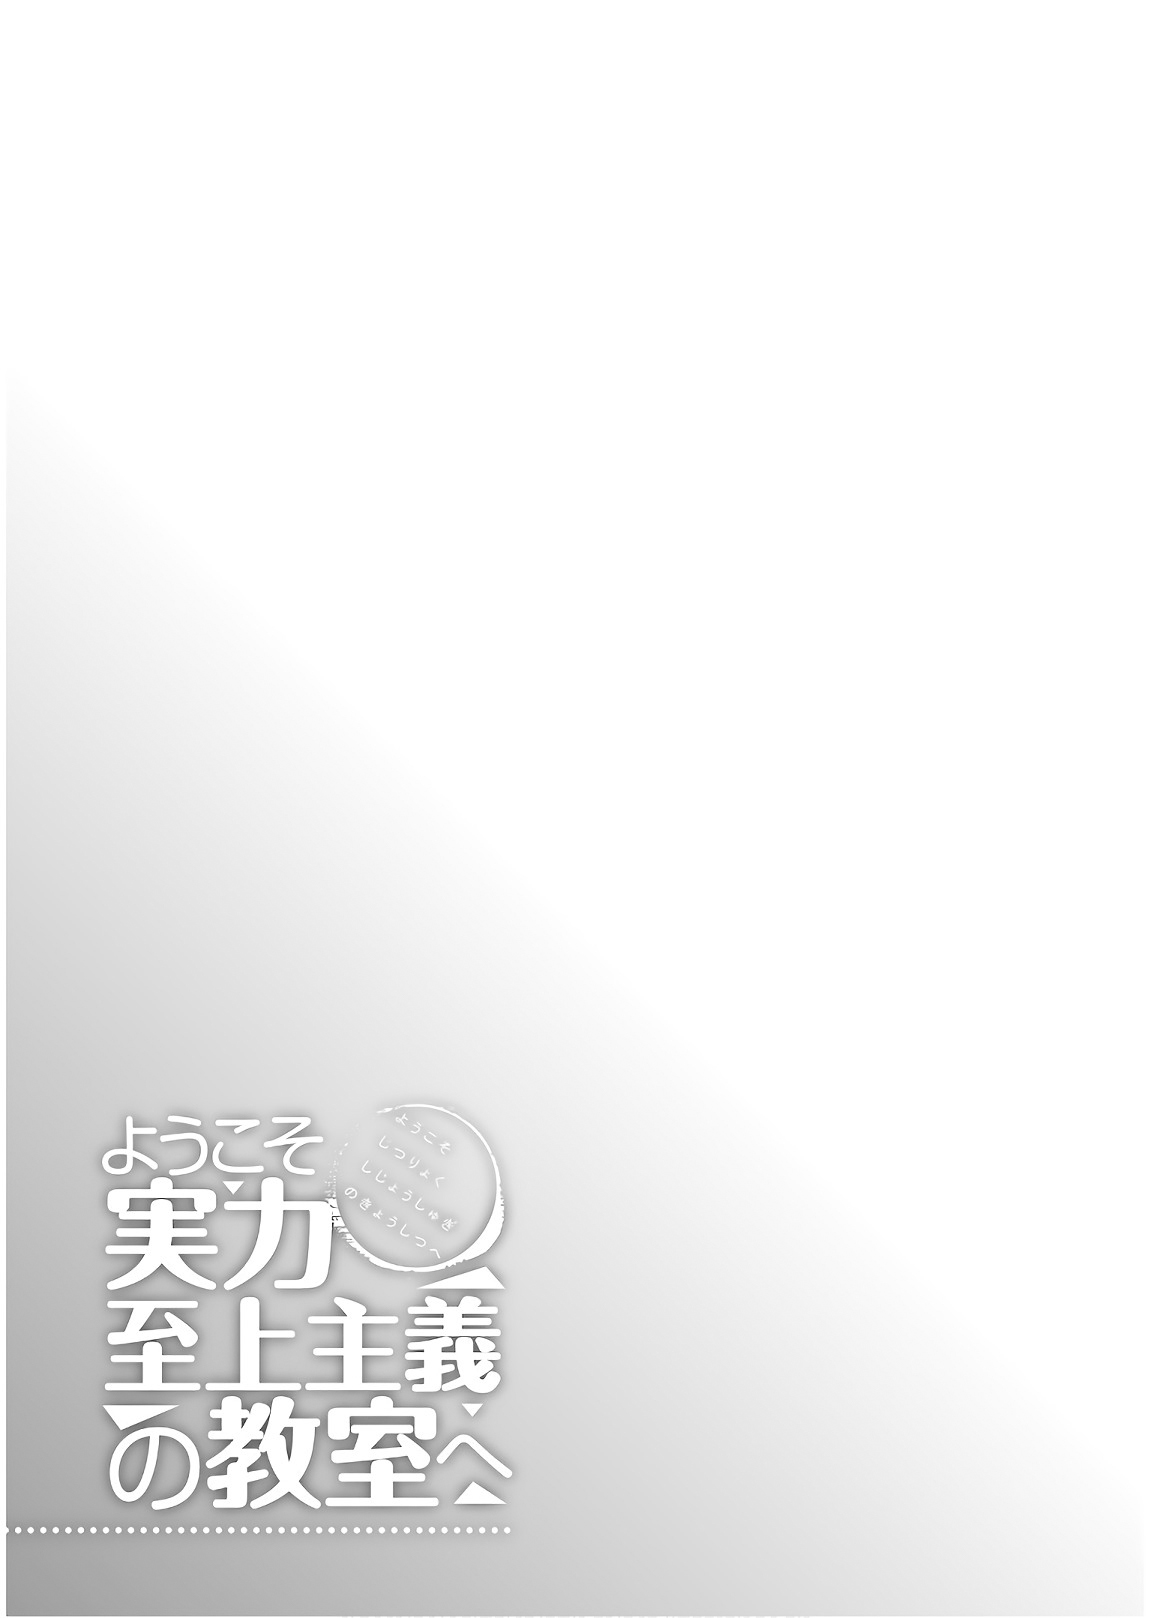 Youkoso Jitsuryoku Shijou Shugi no Kyoushitsu e vol.7 ch.30